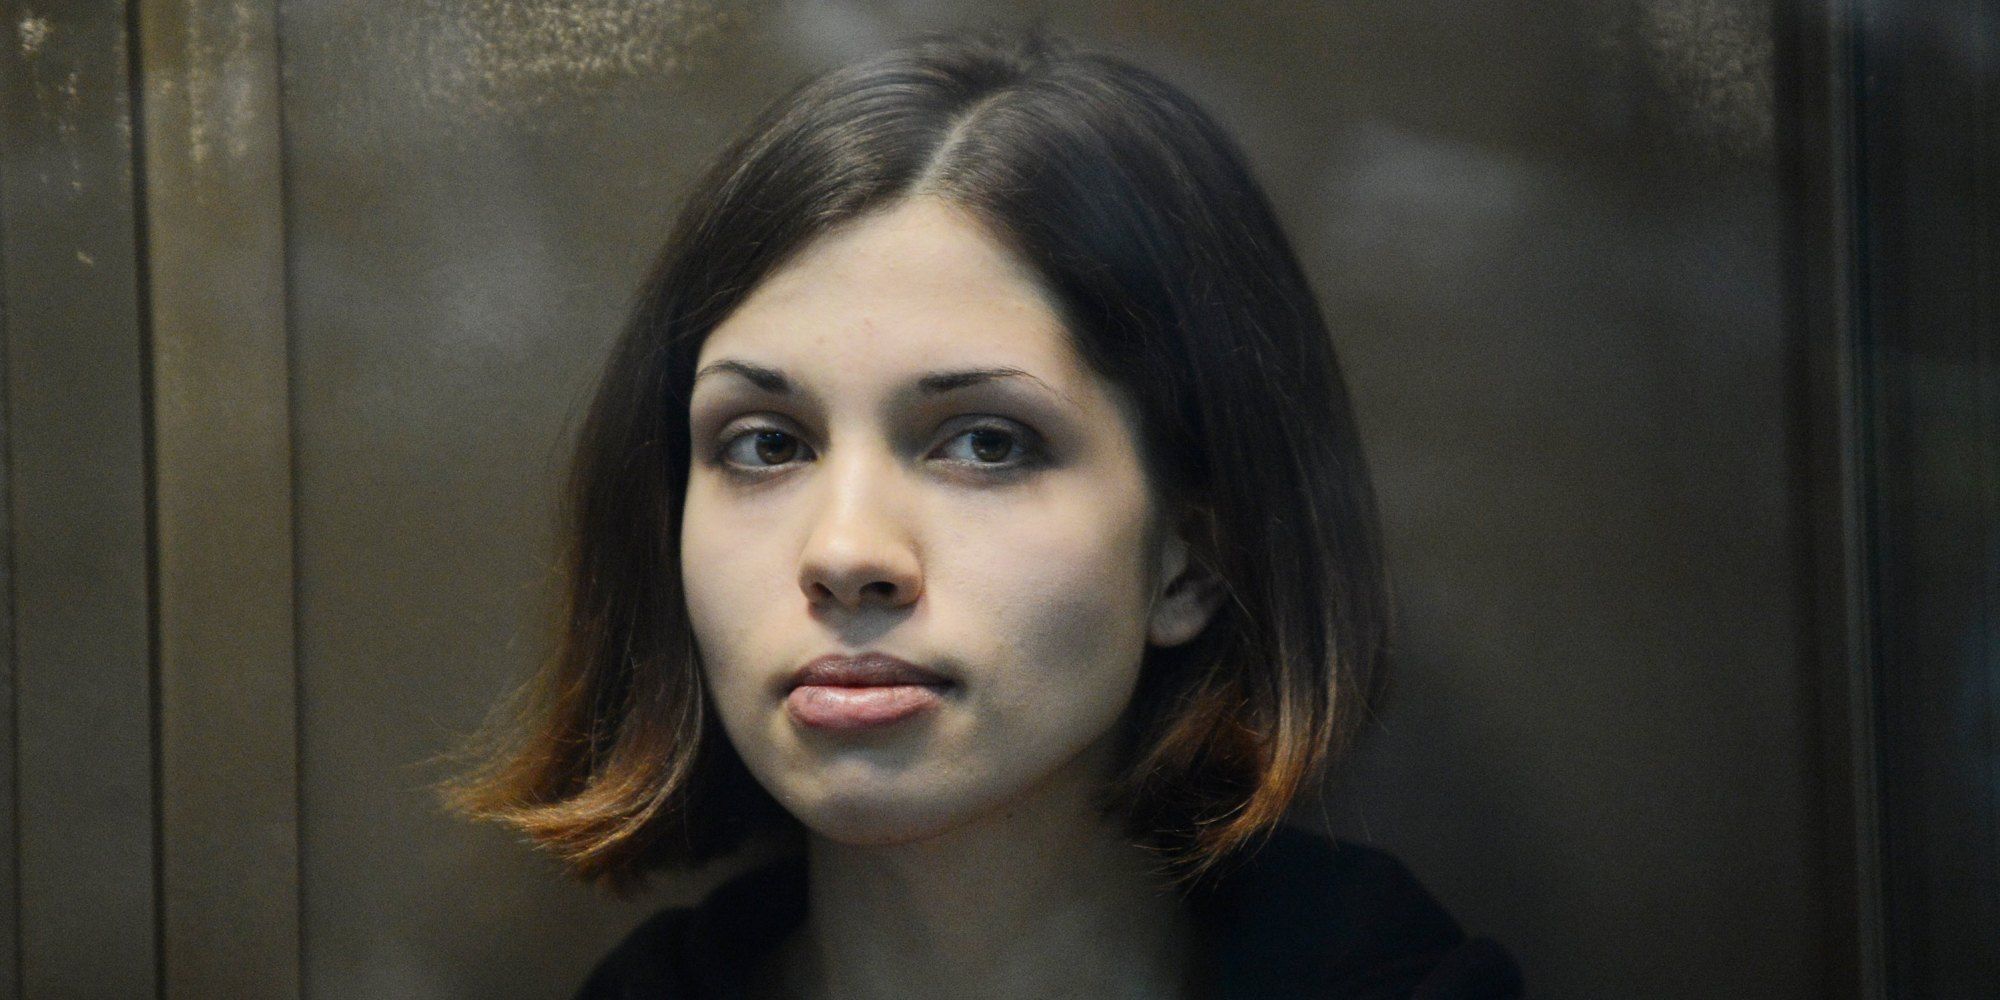 Pictures Of Nadezhda Tolokonnikova